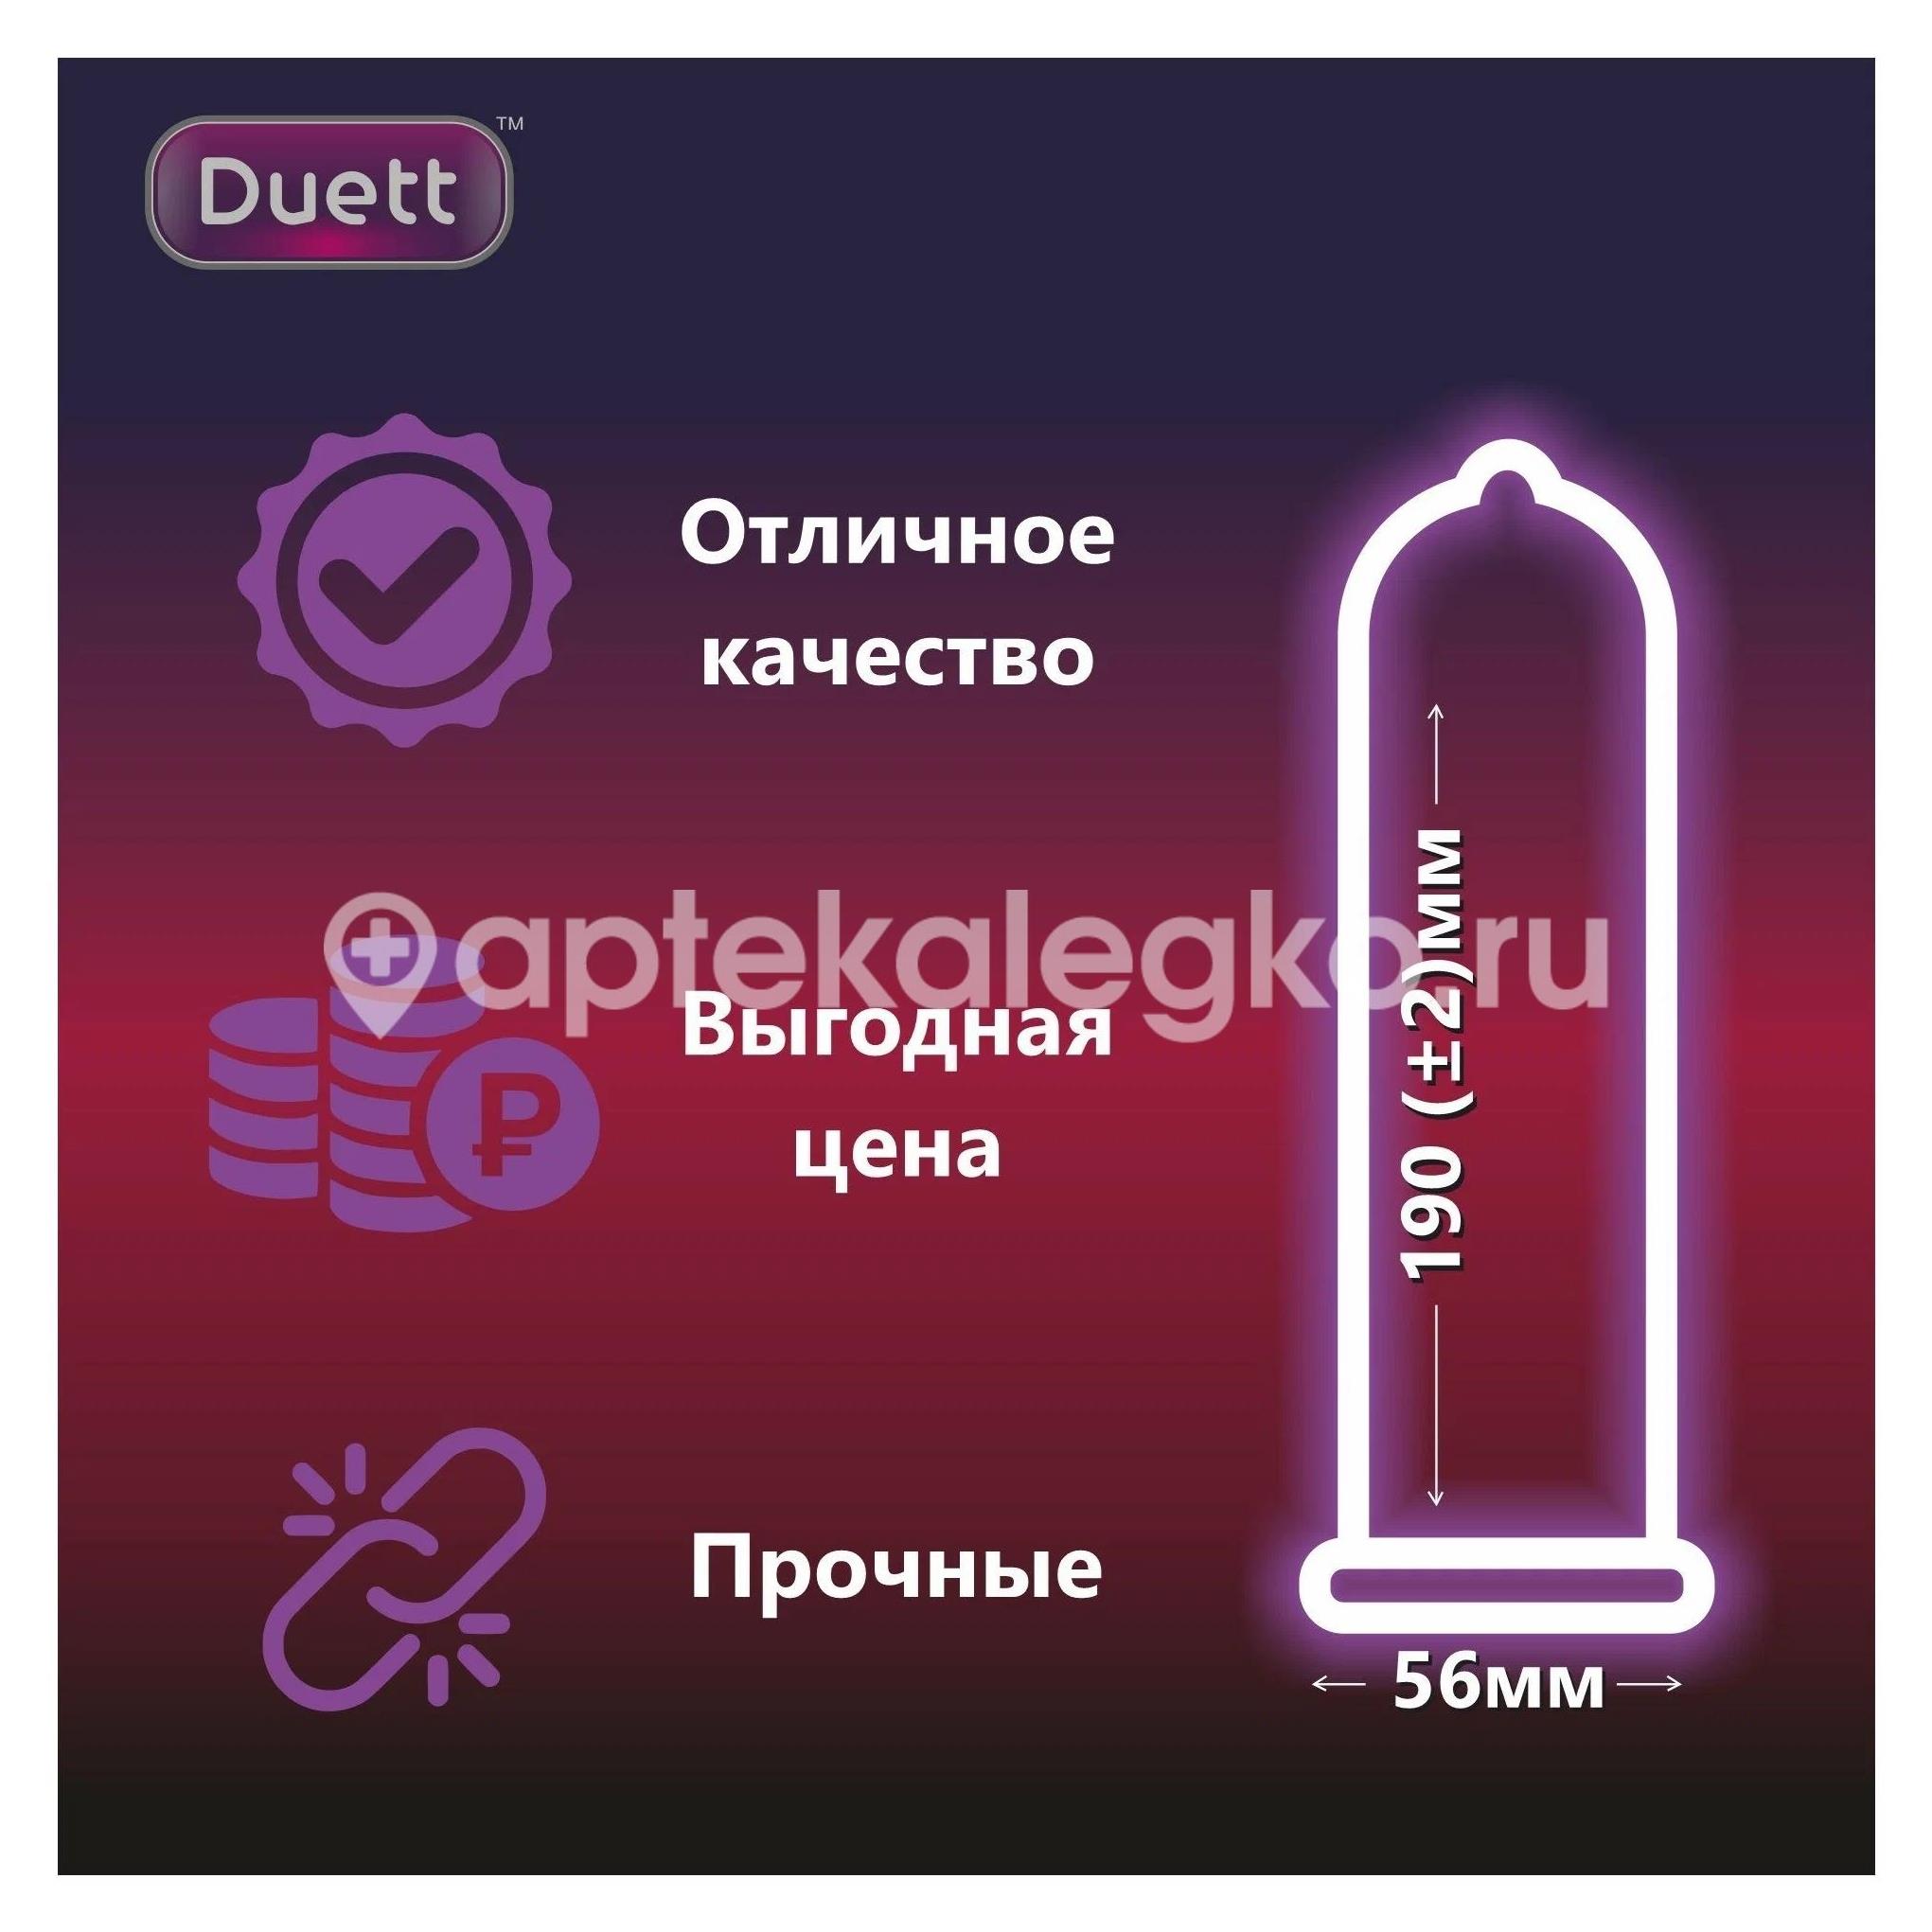 Duett xxl презервативы увеличенного размера 3 шт. [duett] - 3